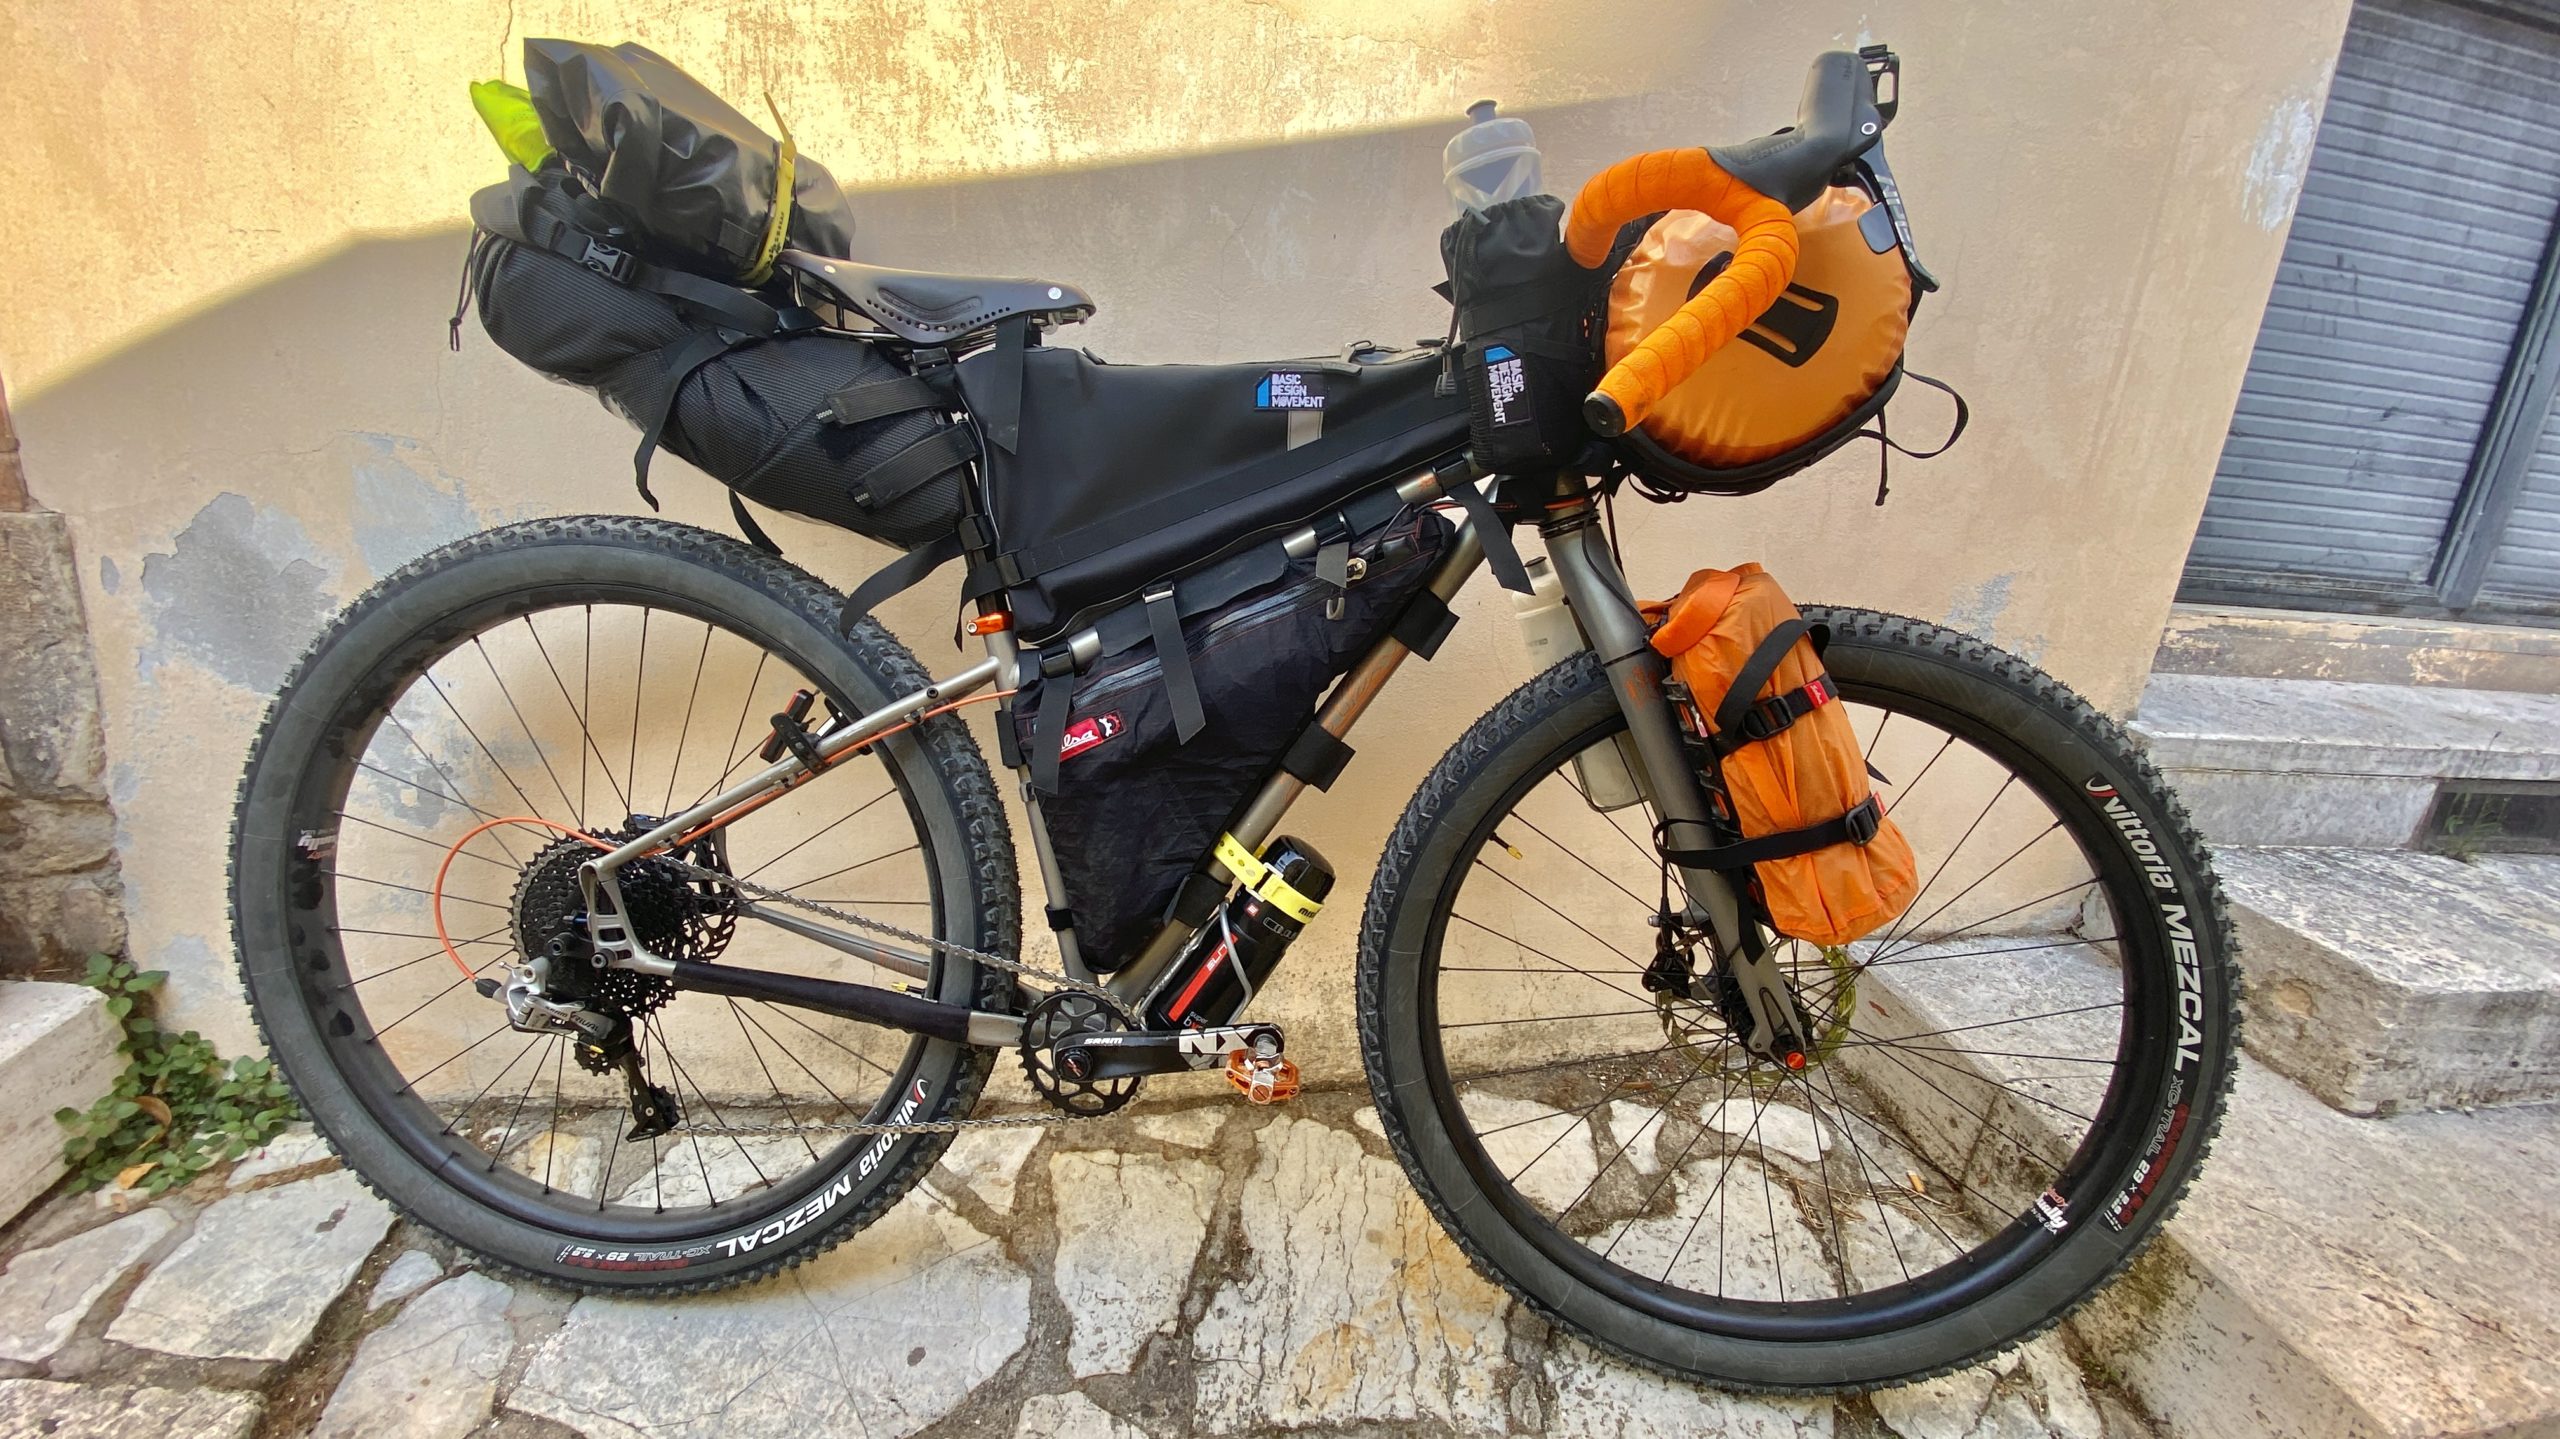 viaggiare in bikepacking, viaggiatore lento, viaggiare in bici in italia, borse per bici su misura, cicloturismo,